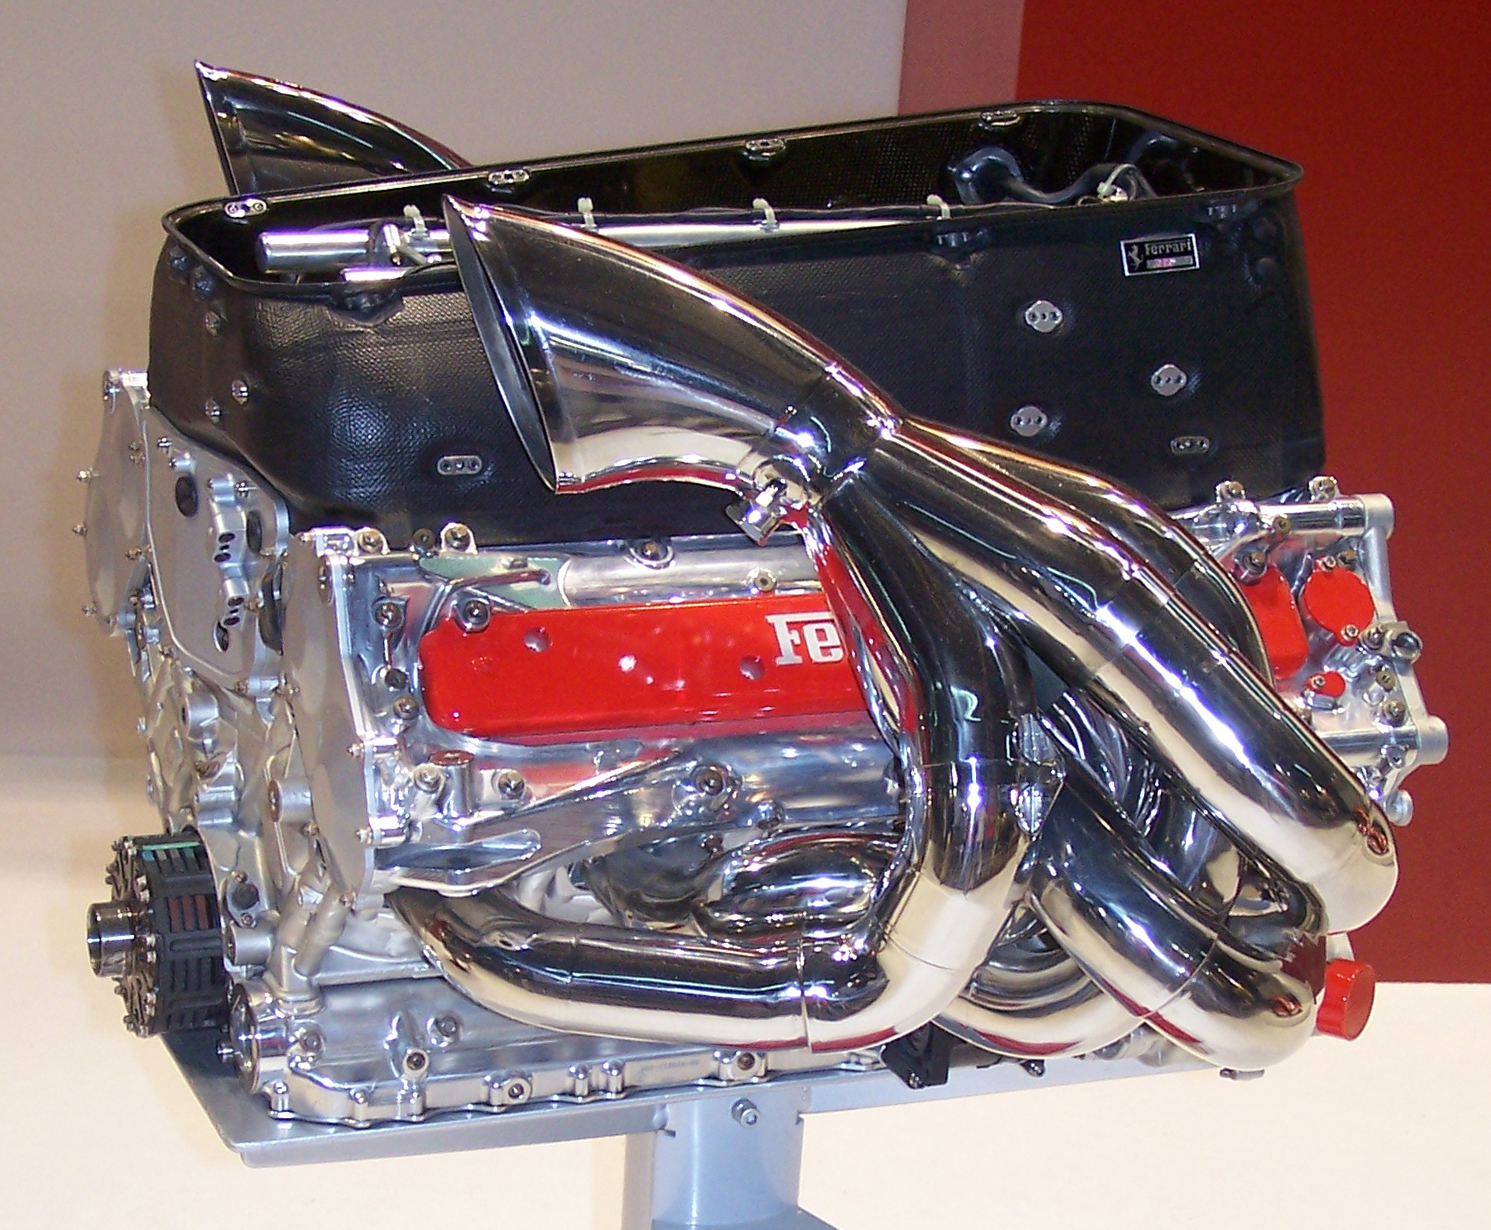 Ferrari Tip 053 V10 engine